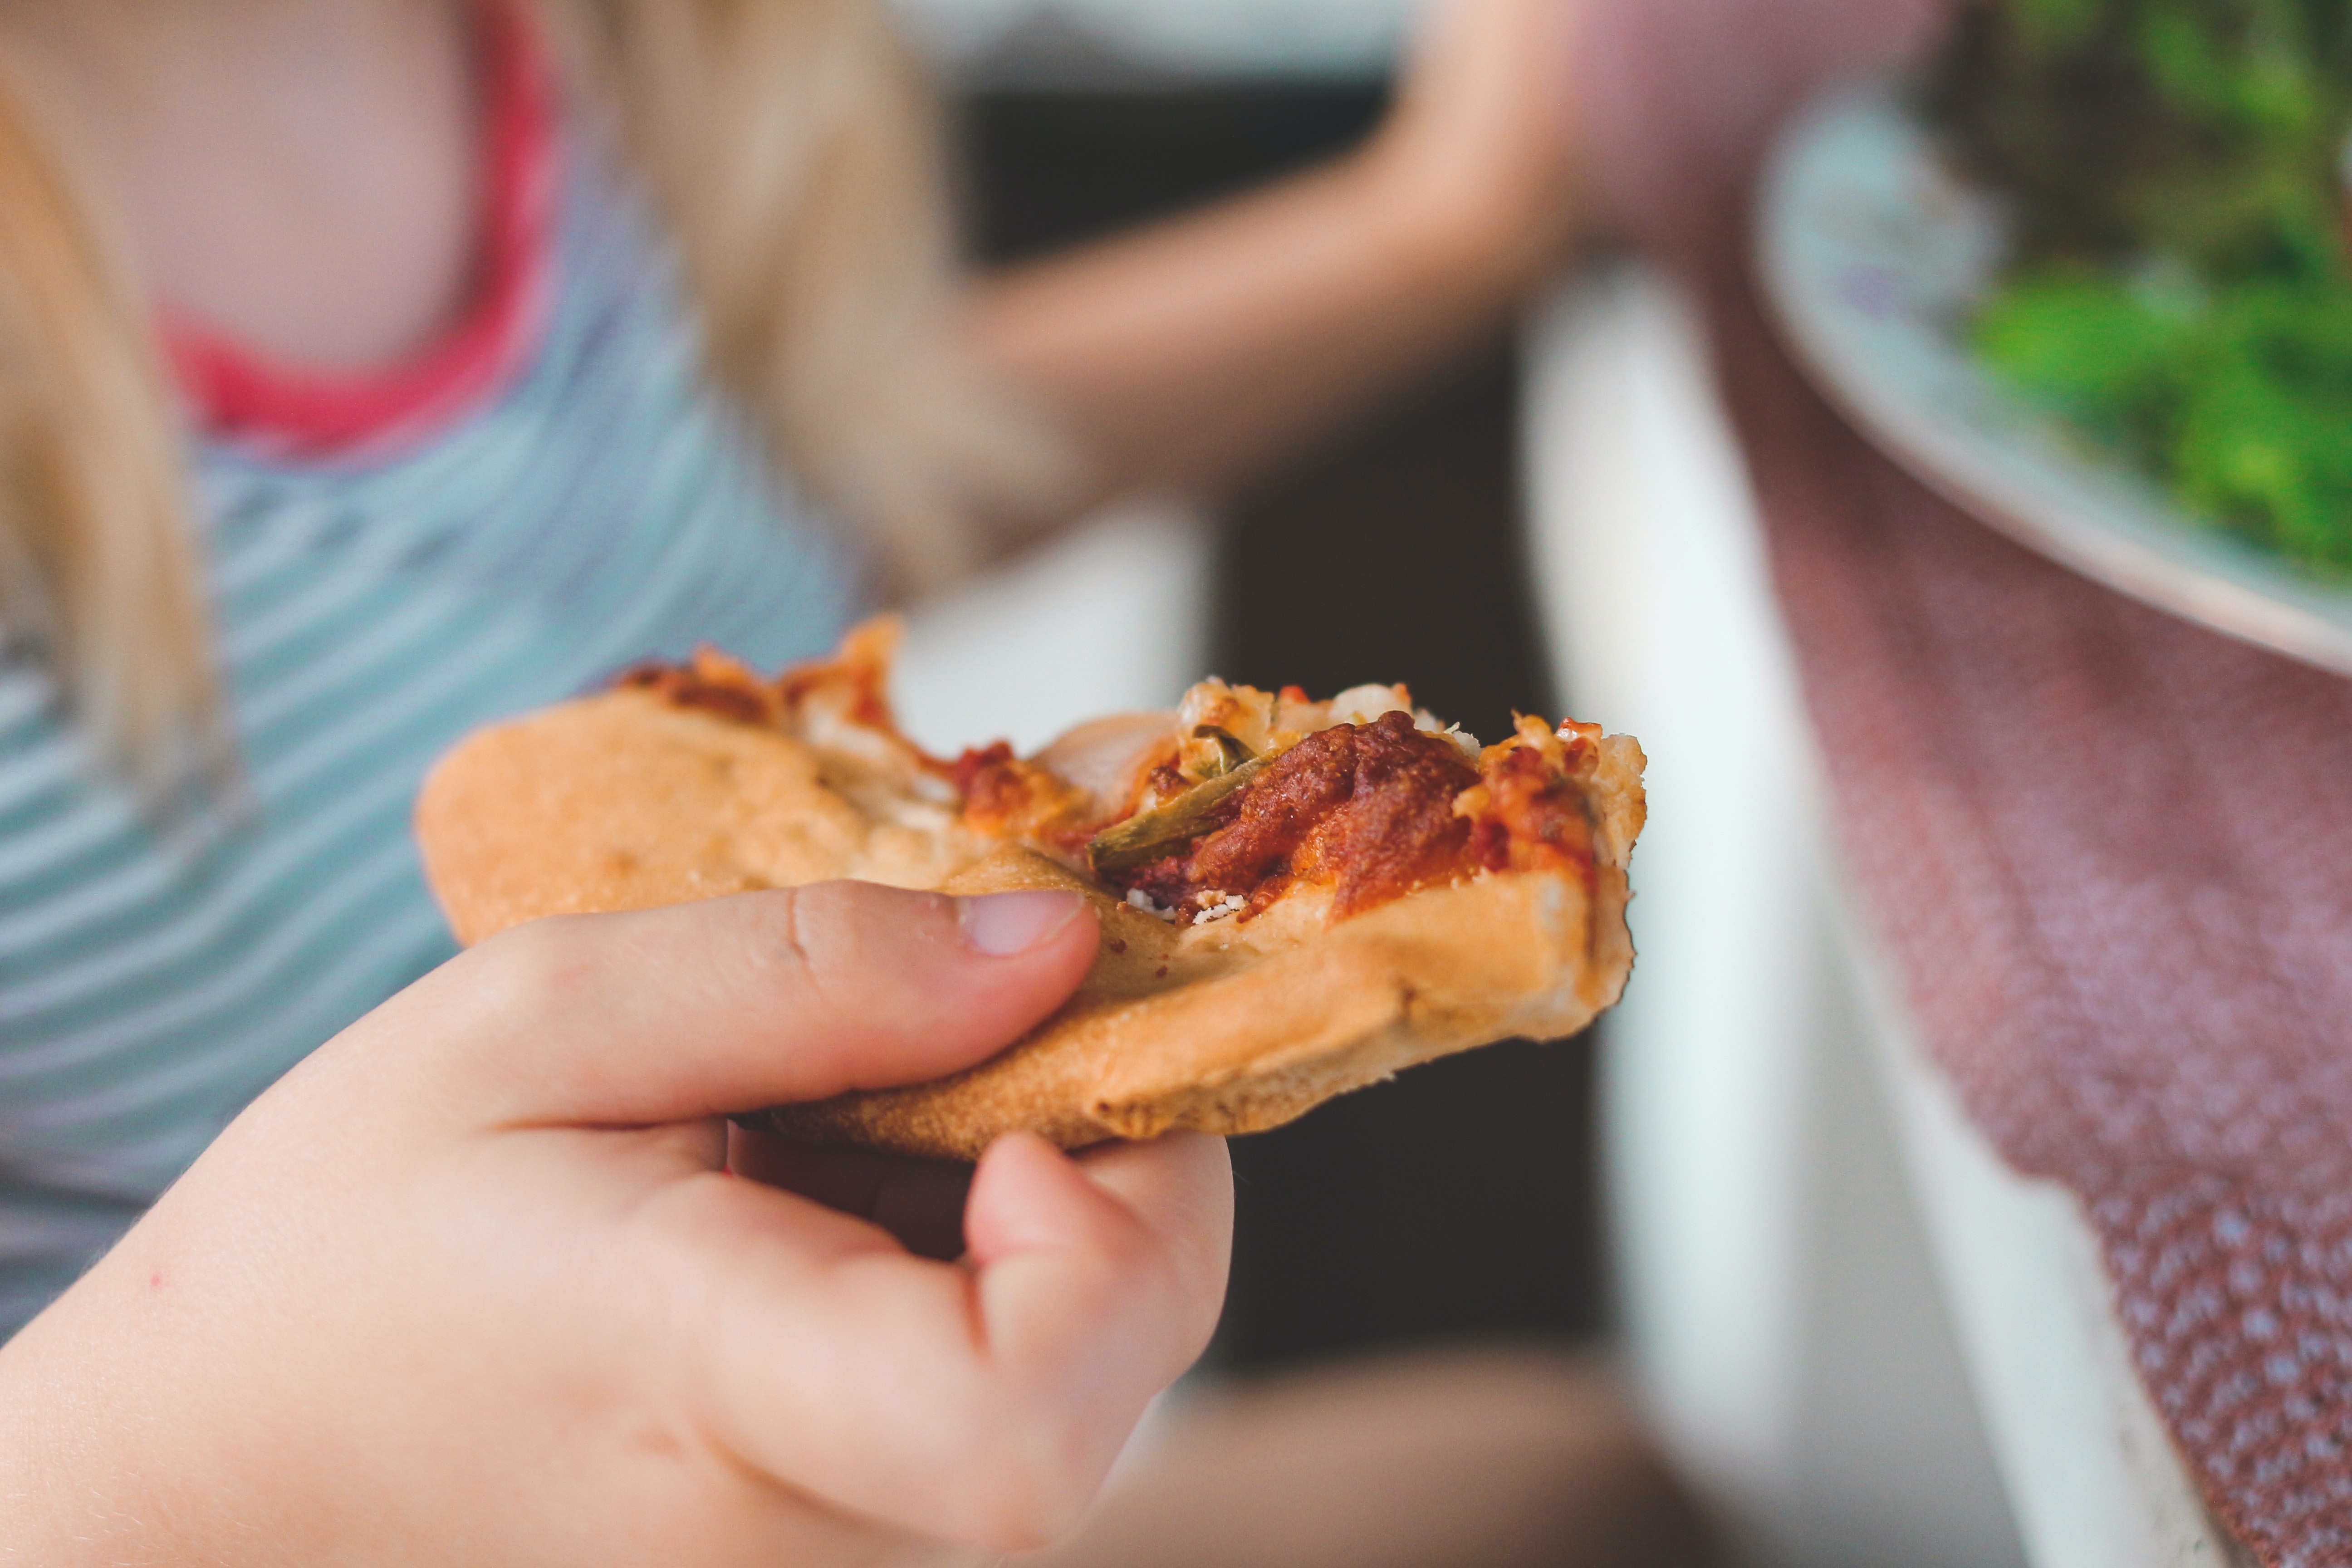 Una niña come una porción de pizza, comida que en muchos países se vende bajo los estándares de ultraprocesamiento y son altos en ingredientes poco saludables. Foto: UNsplash / @sigmund